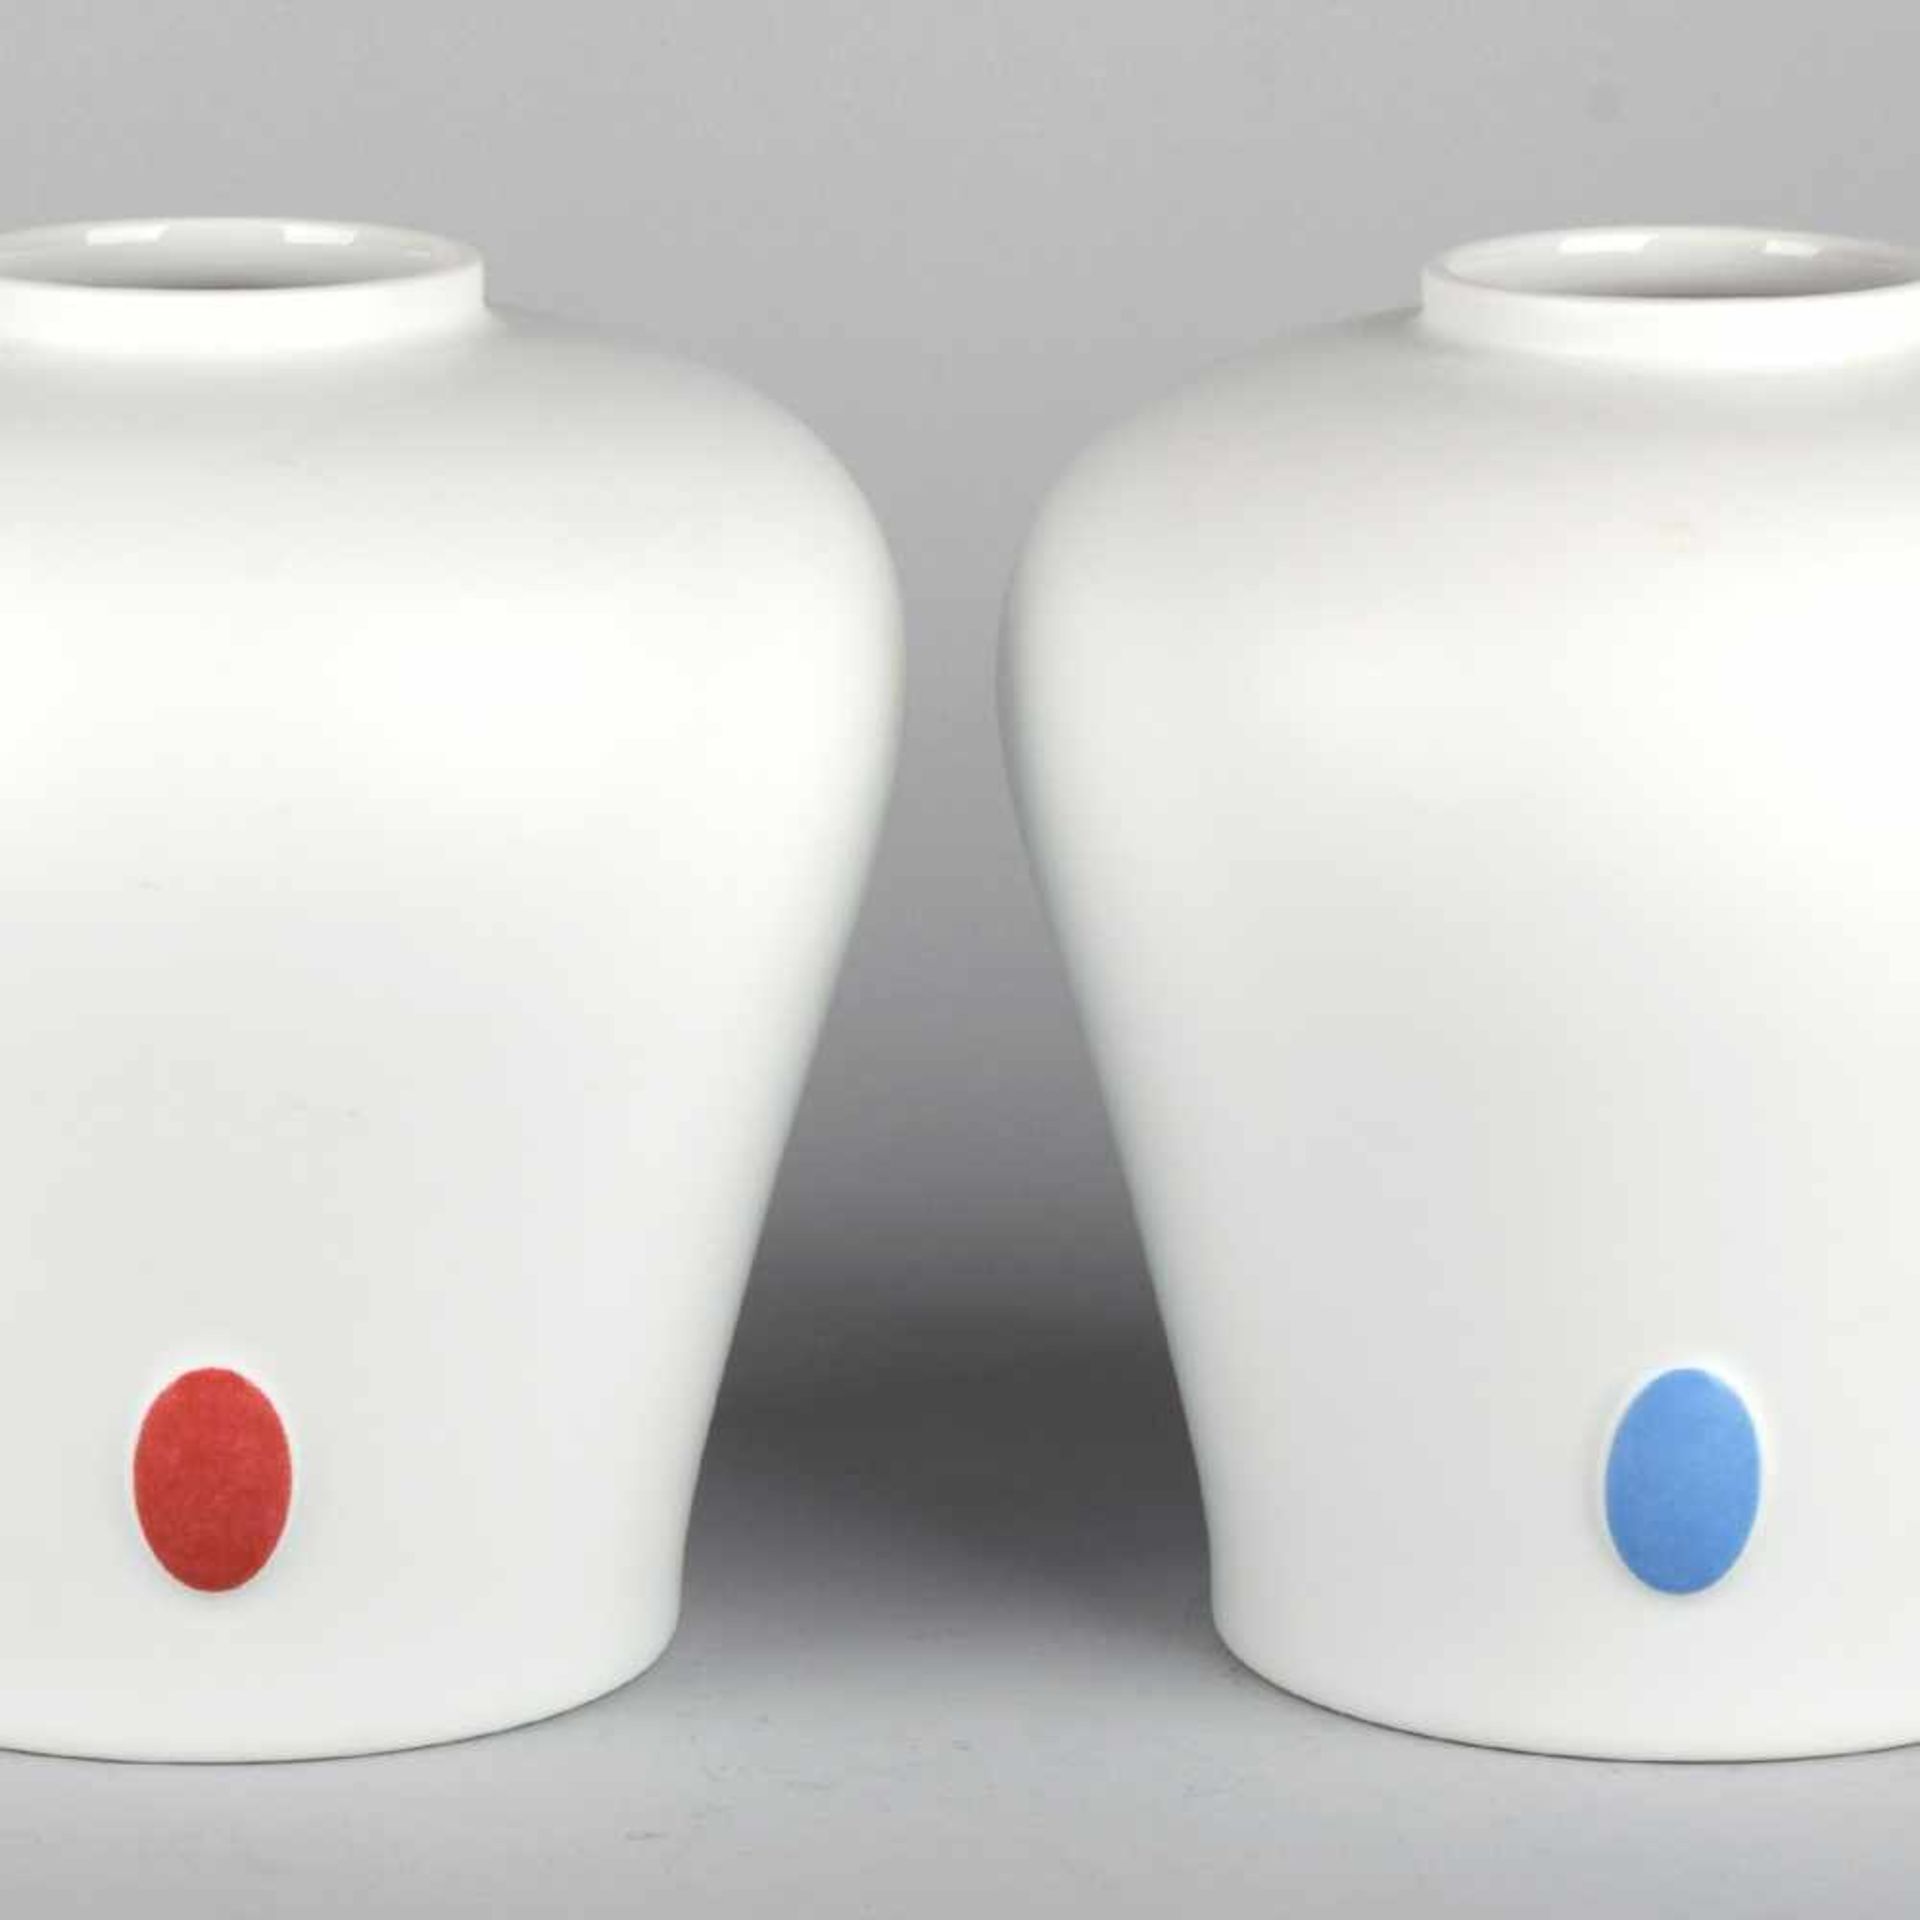 Paar Vasen Hersteller: Philipp Rosenthal, Selb, Modellnr. 14238/21, zur Schulter hin gebauchte